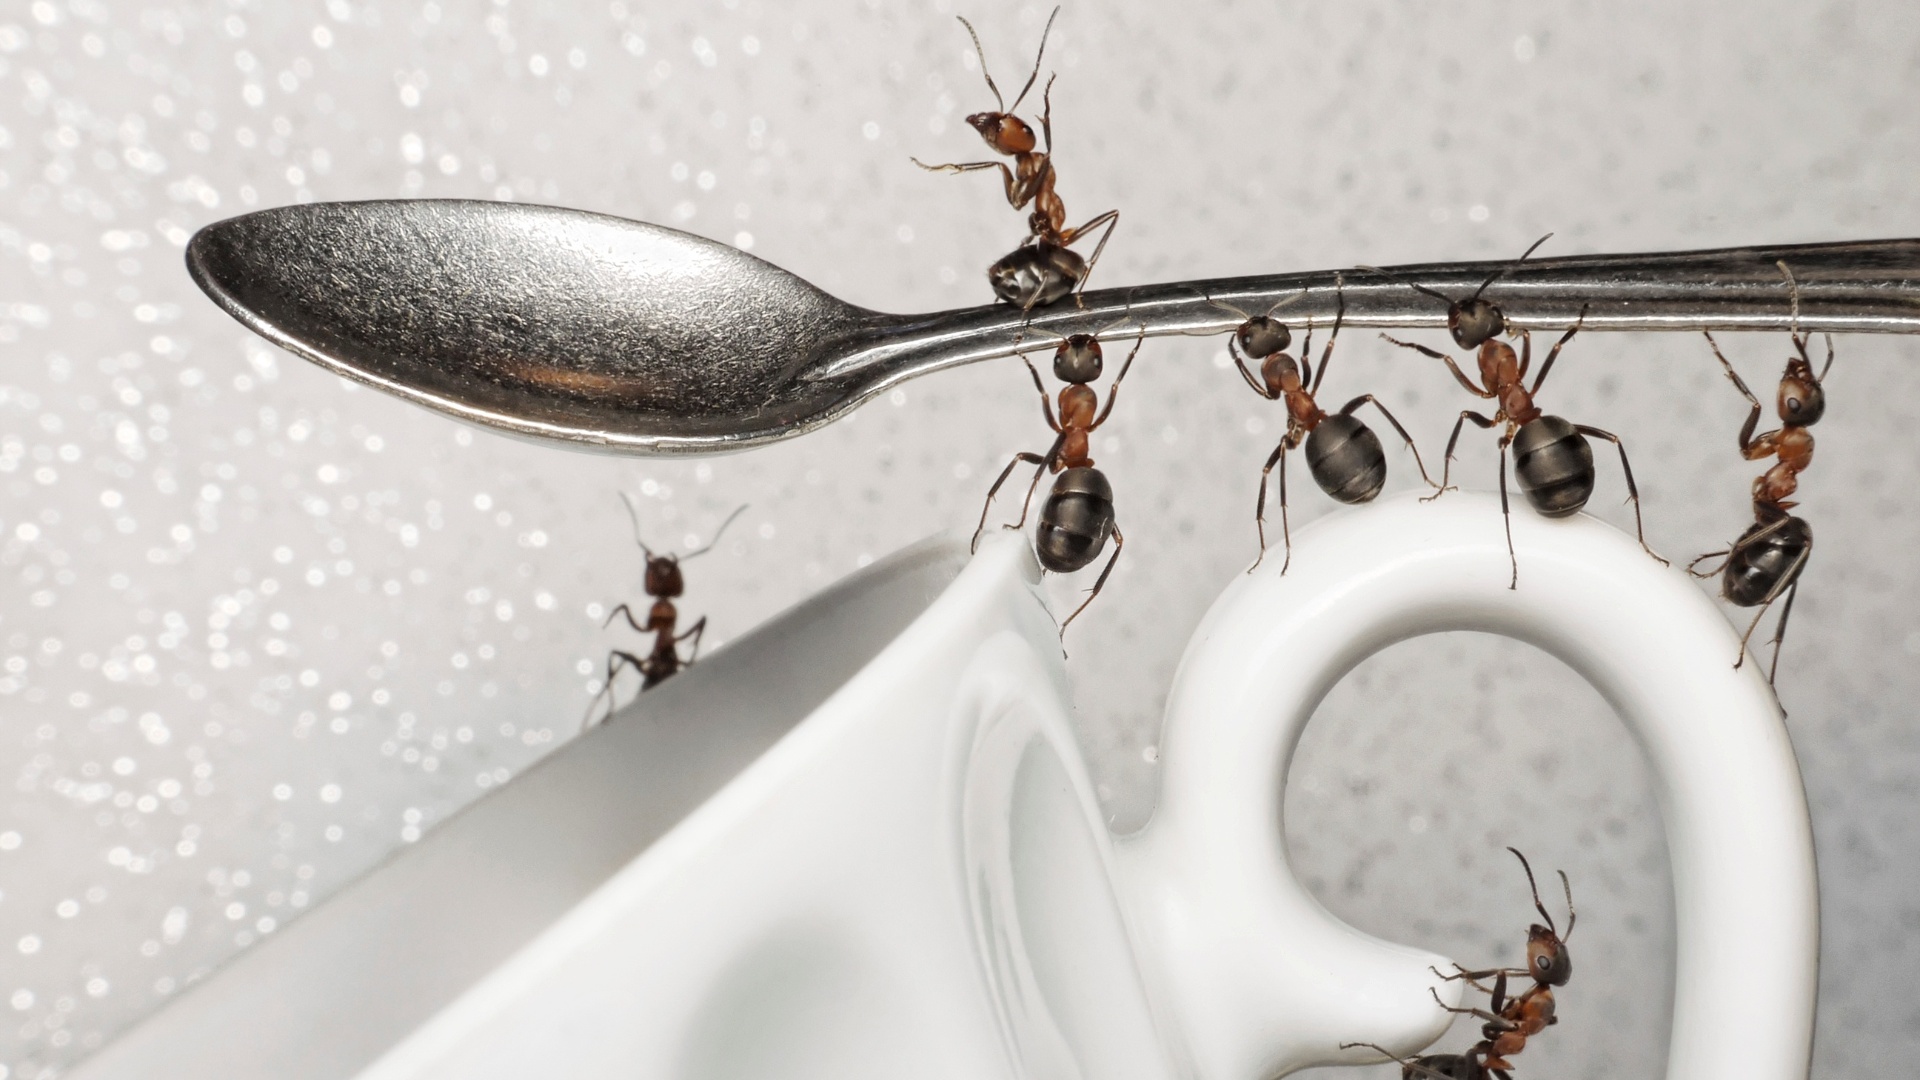 Aprenda como manter as formigas longe do pote de açúcar